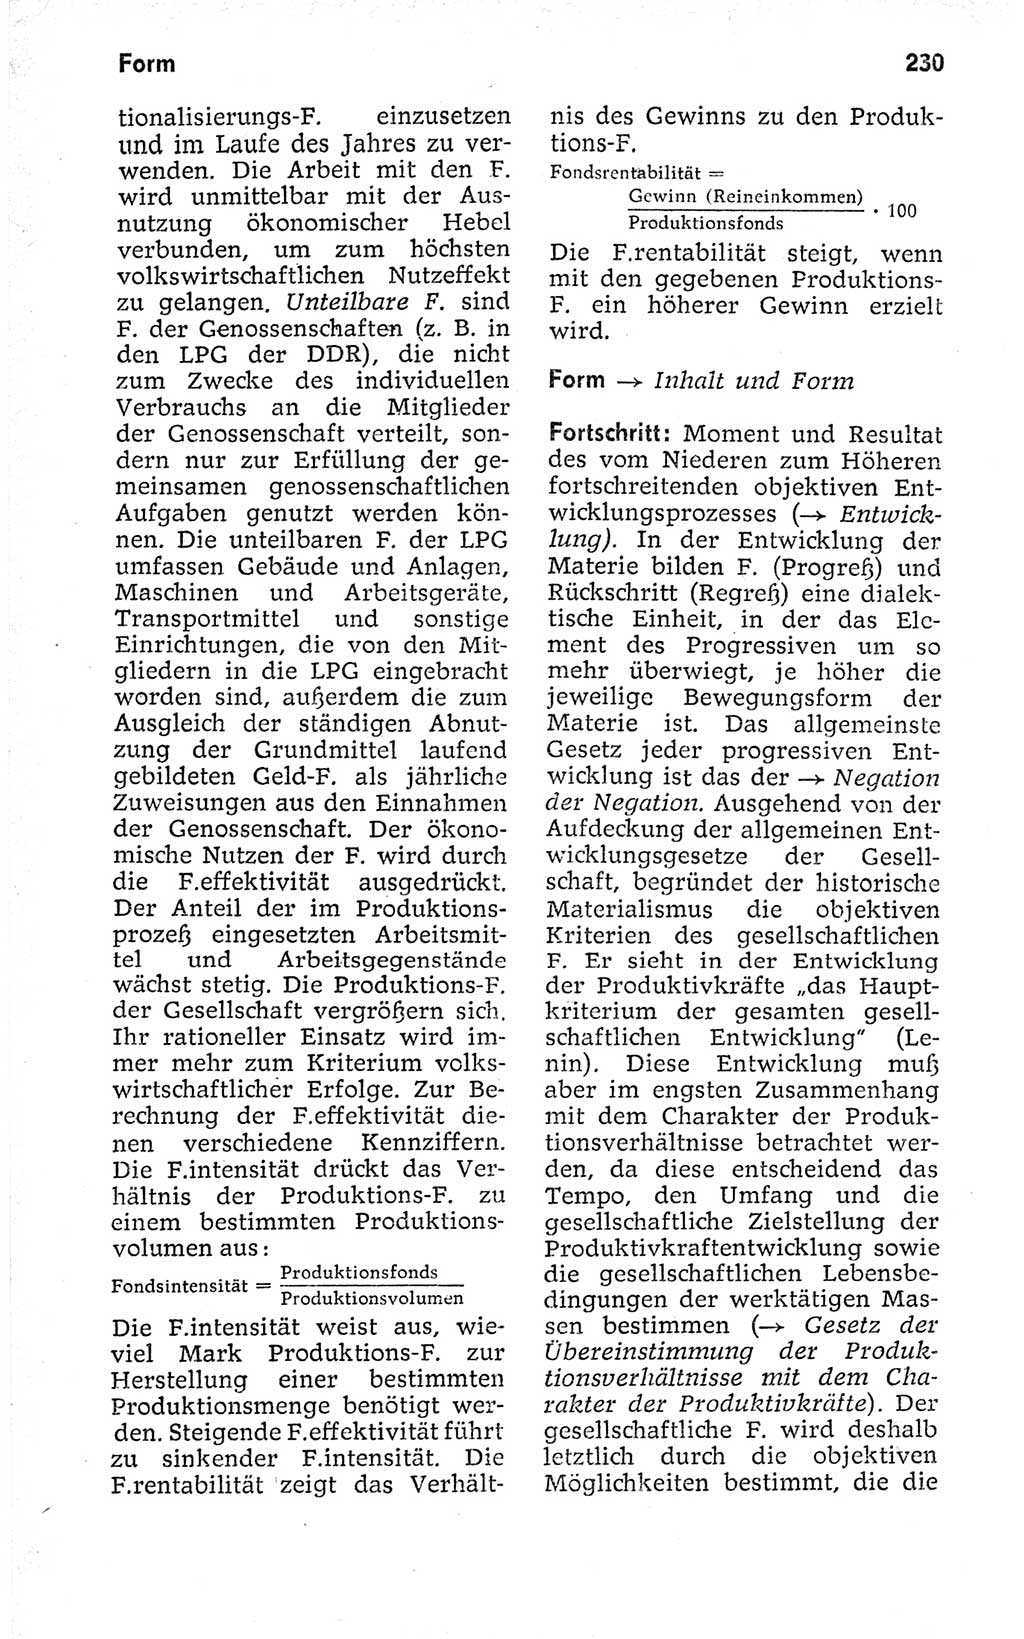 Kleines politisches Wörterbuch [Deutsche Demokratische Republik (DDR)] 1973, Seite 230 (Kl. pol. Wb. DDR 1973, S. 230)